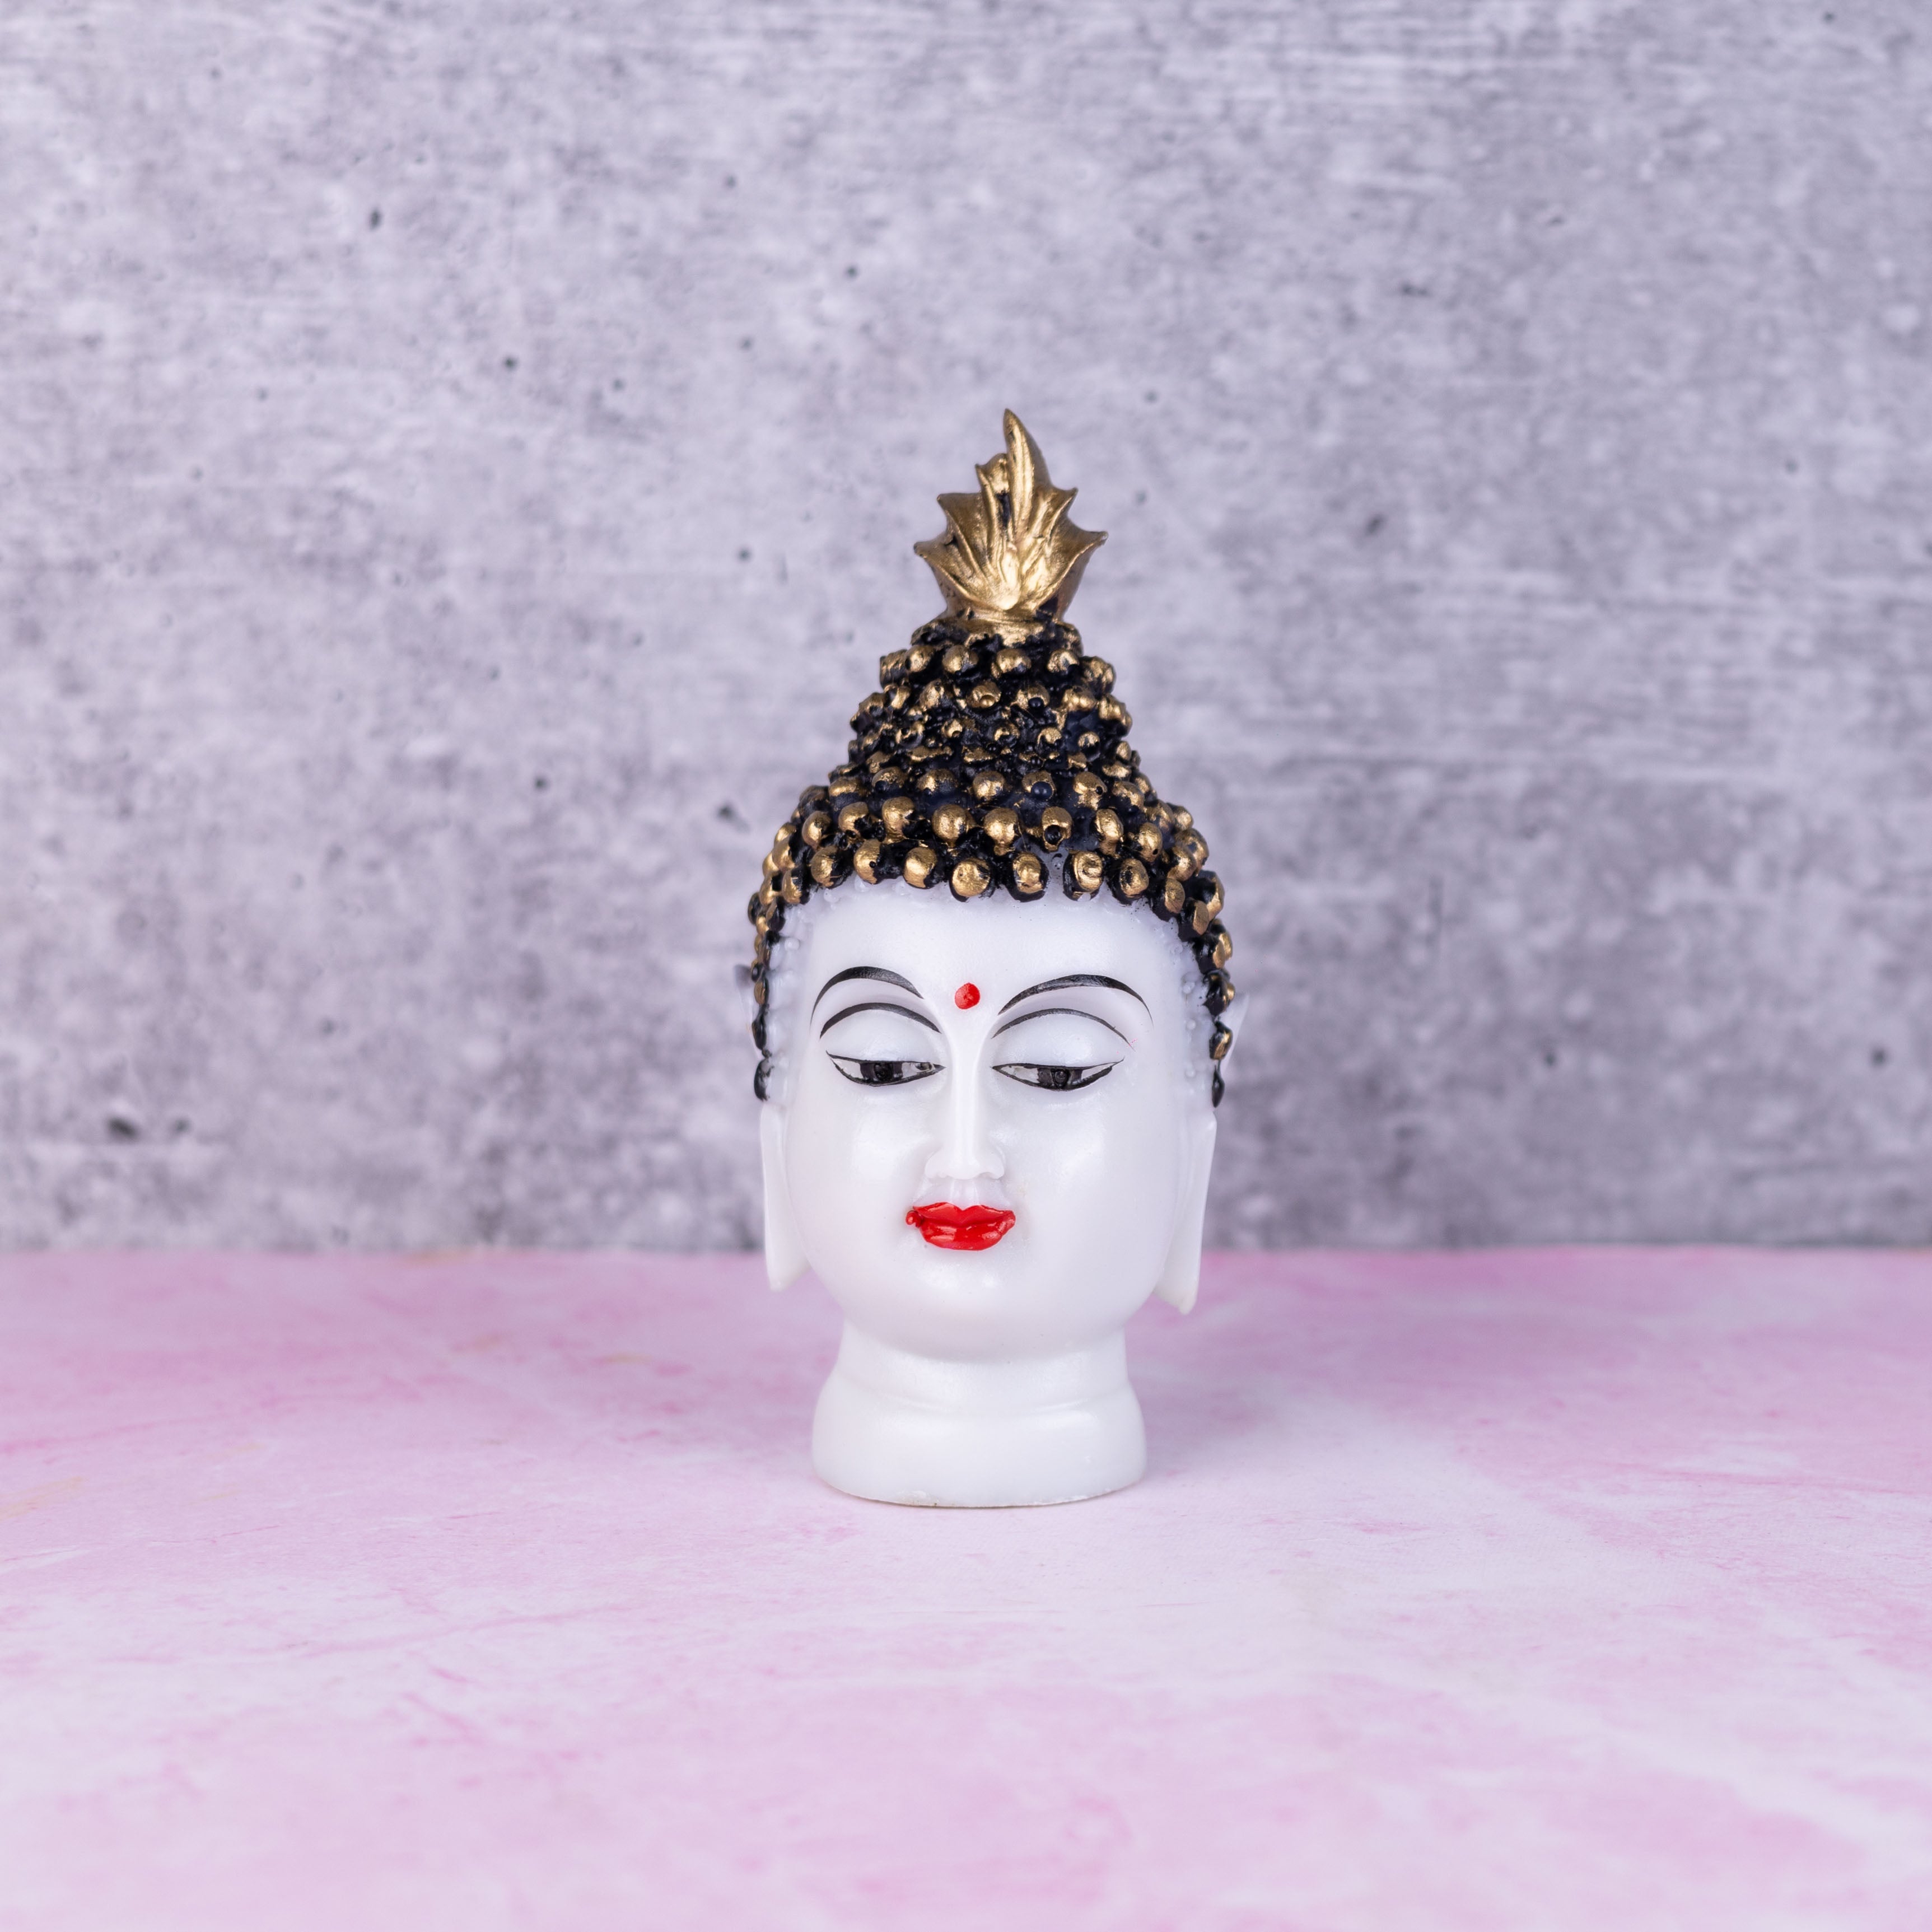 Marble dust buddha head showpeice for table decor - 5 inch